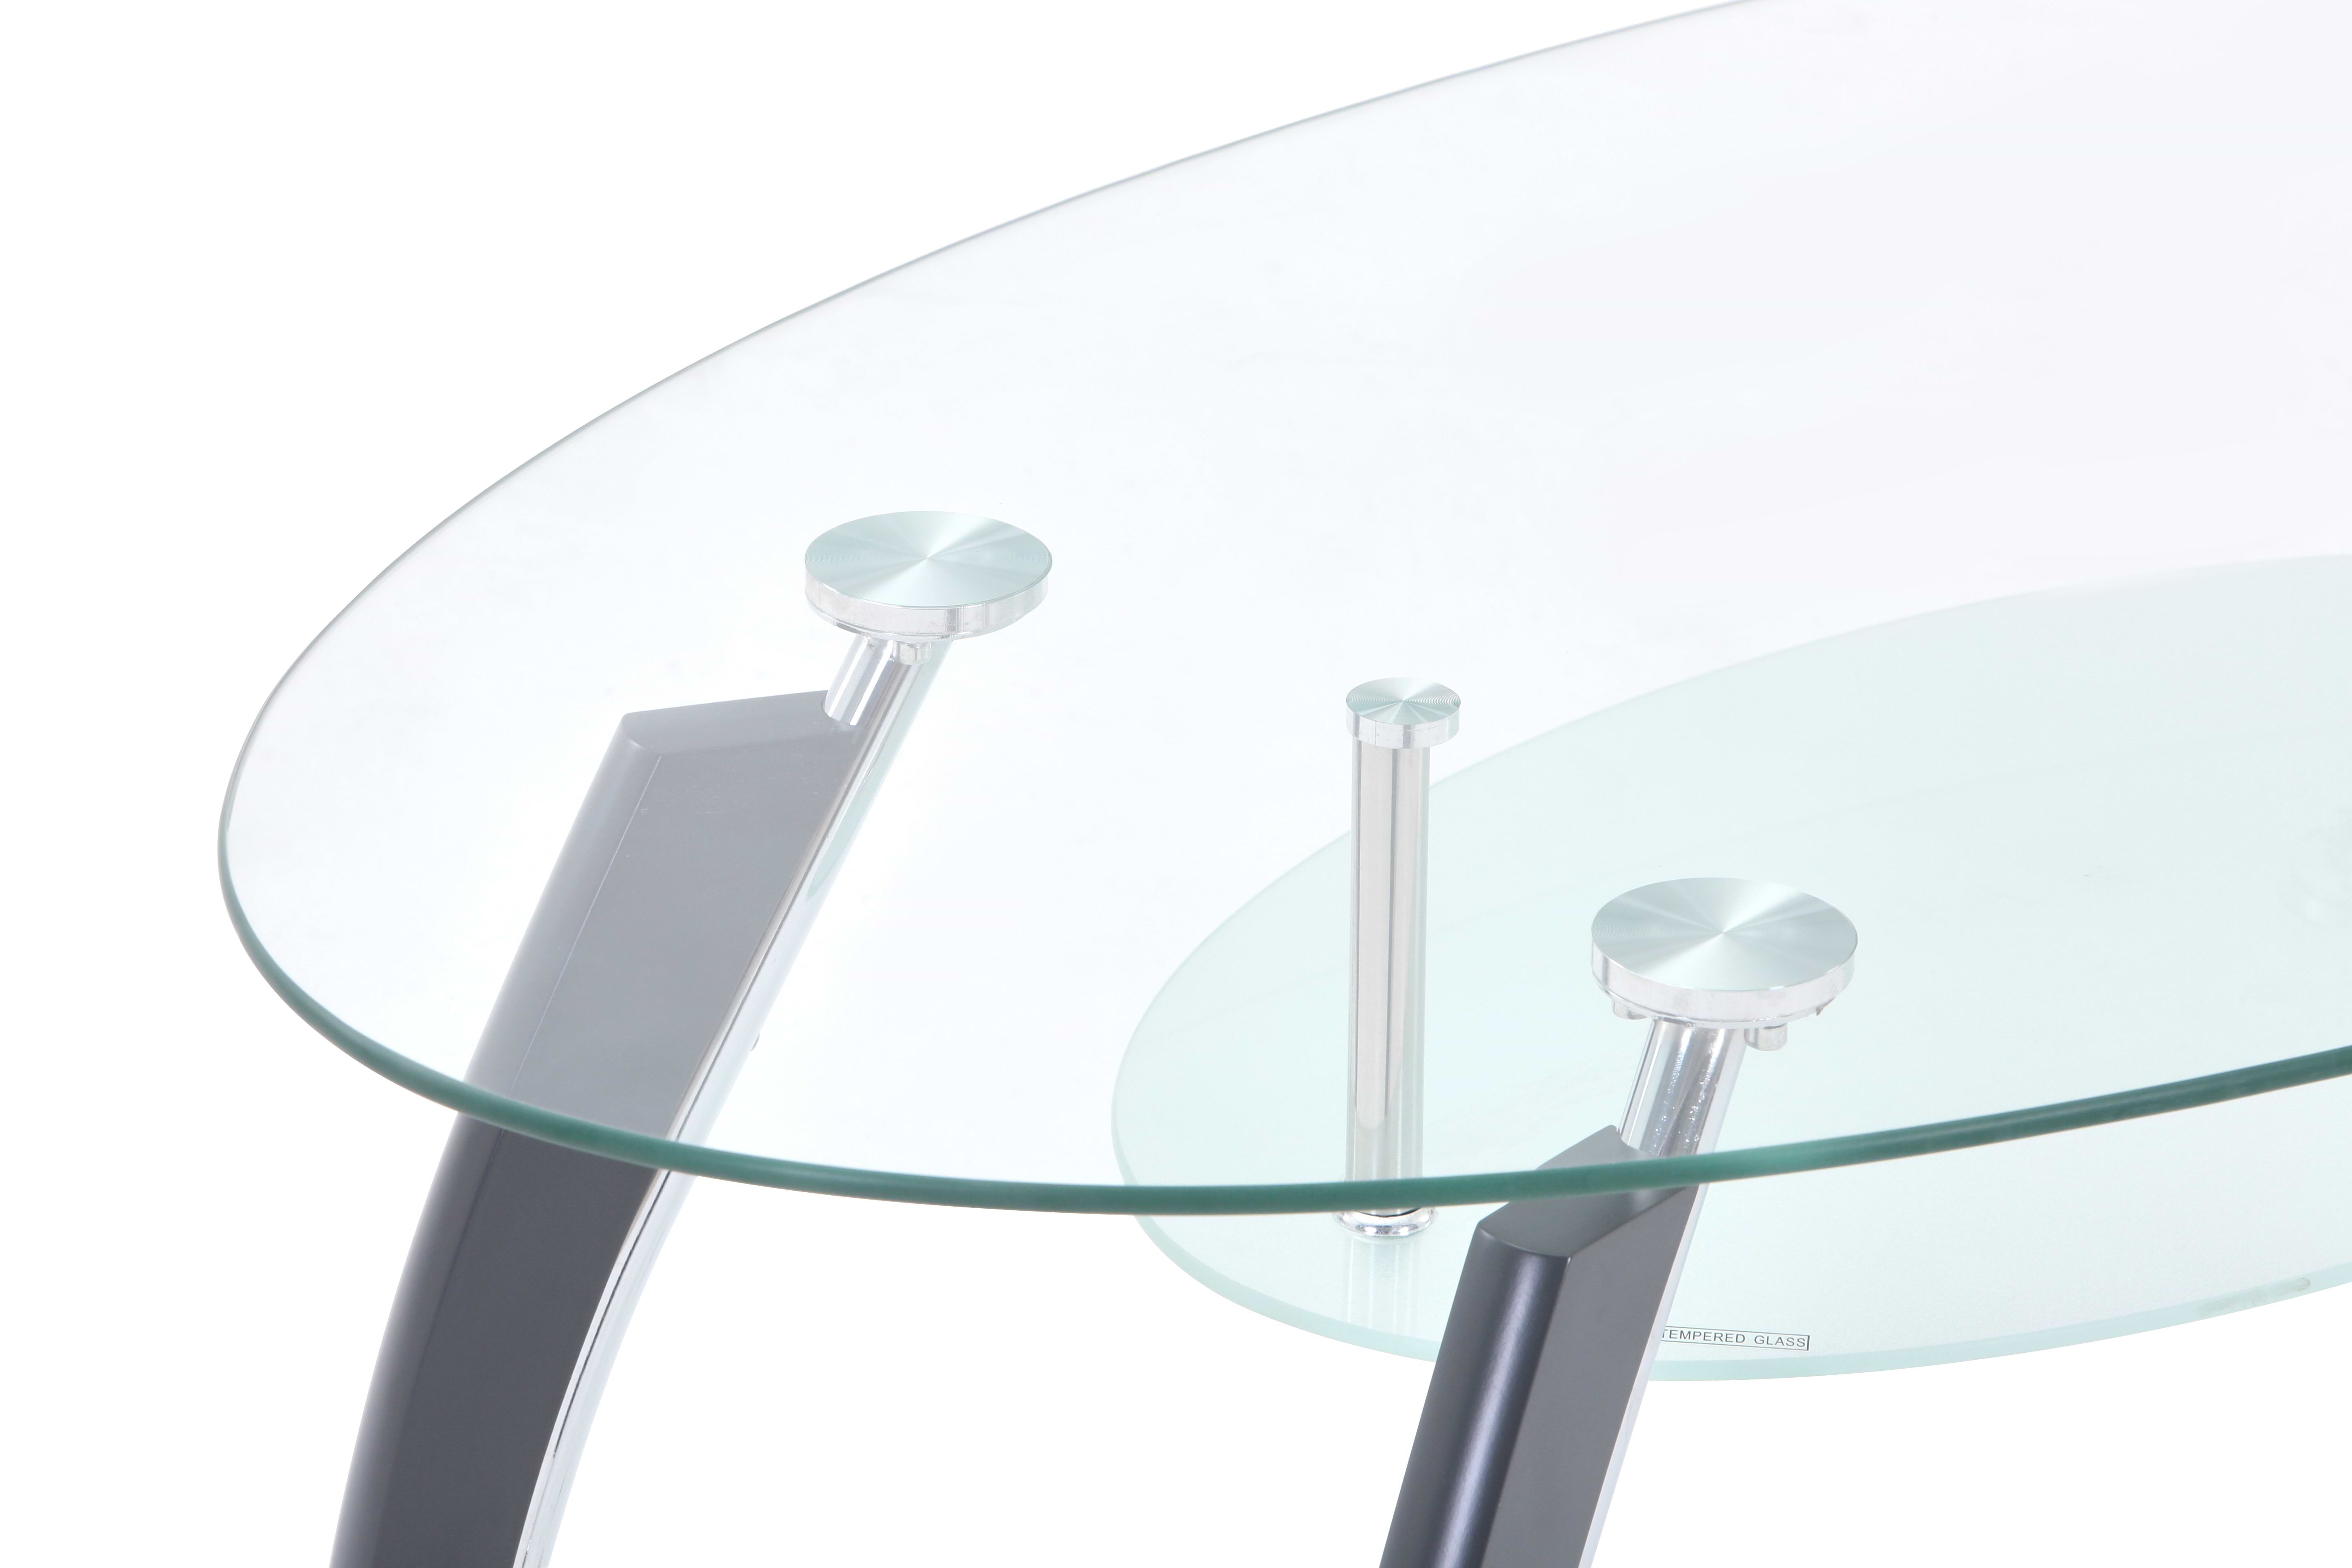 שולחן סלון דגם לאציו צבע רגליים אפורות HOMAX